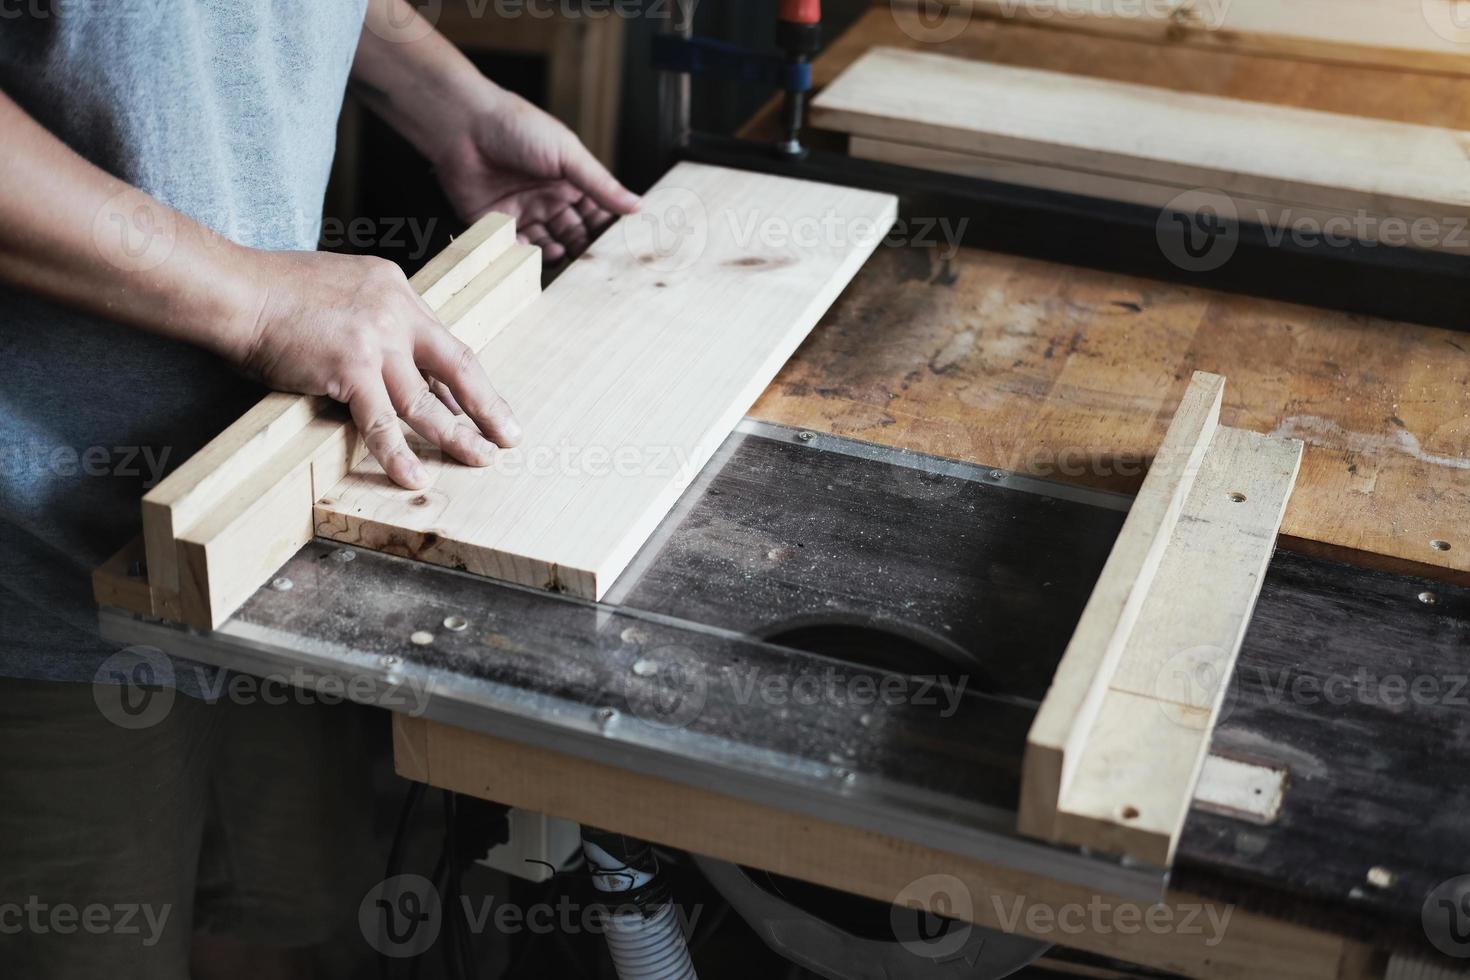 los profesionales de la carpintería utilizan hojas de sierra para cortar piezas de madera para ensamblar y construir mesas de madera para sus clientes. foto